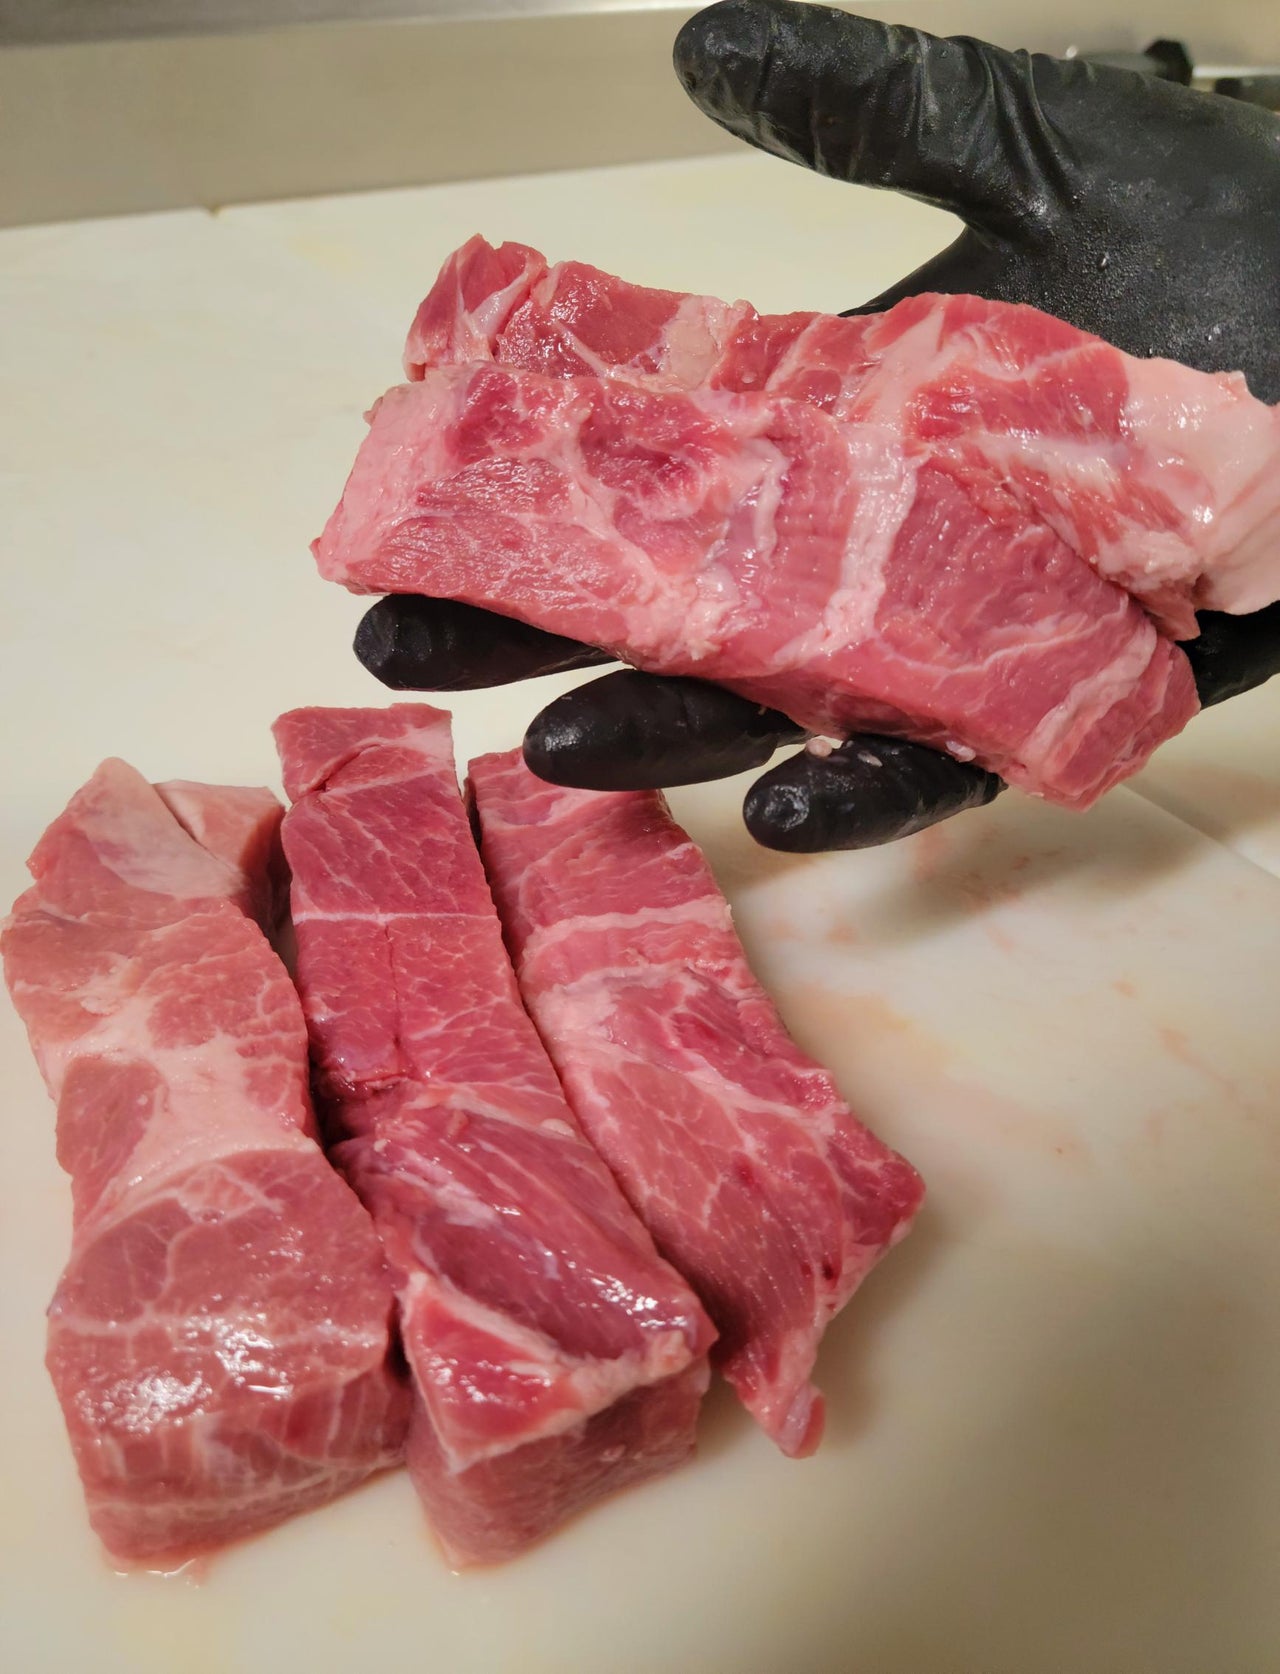 Pork Shoulder Ribs Boneless Skinless (Avg. Wt 1 lb) Country Style Ribs